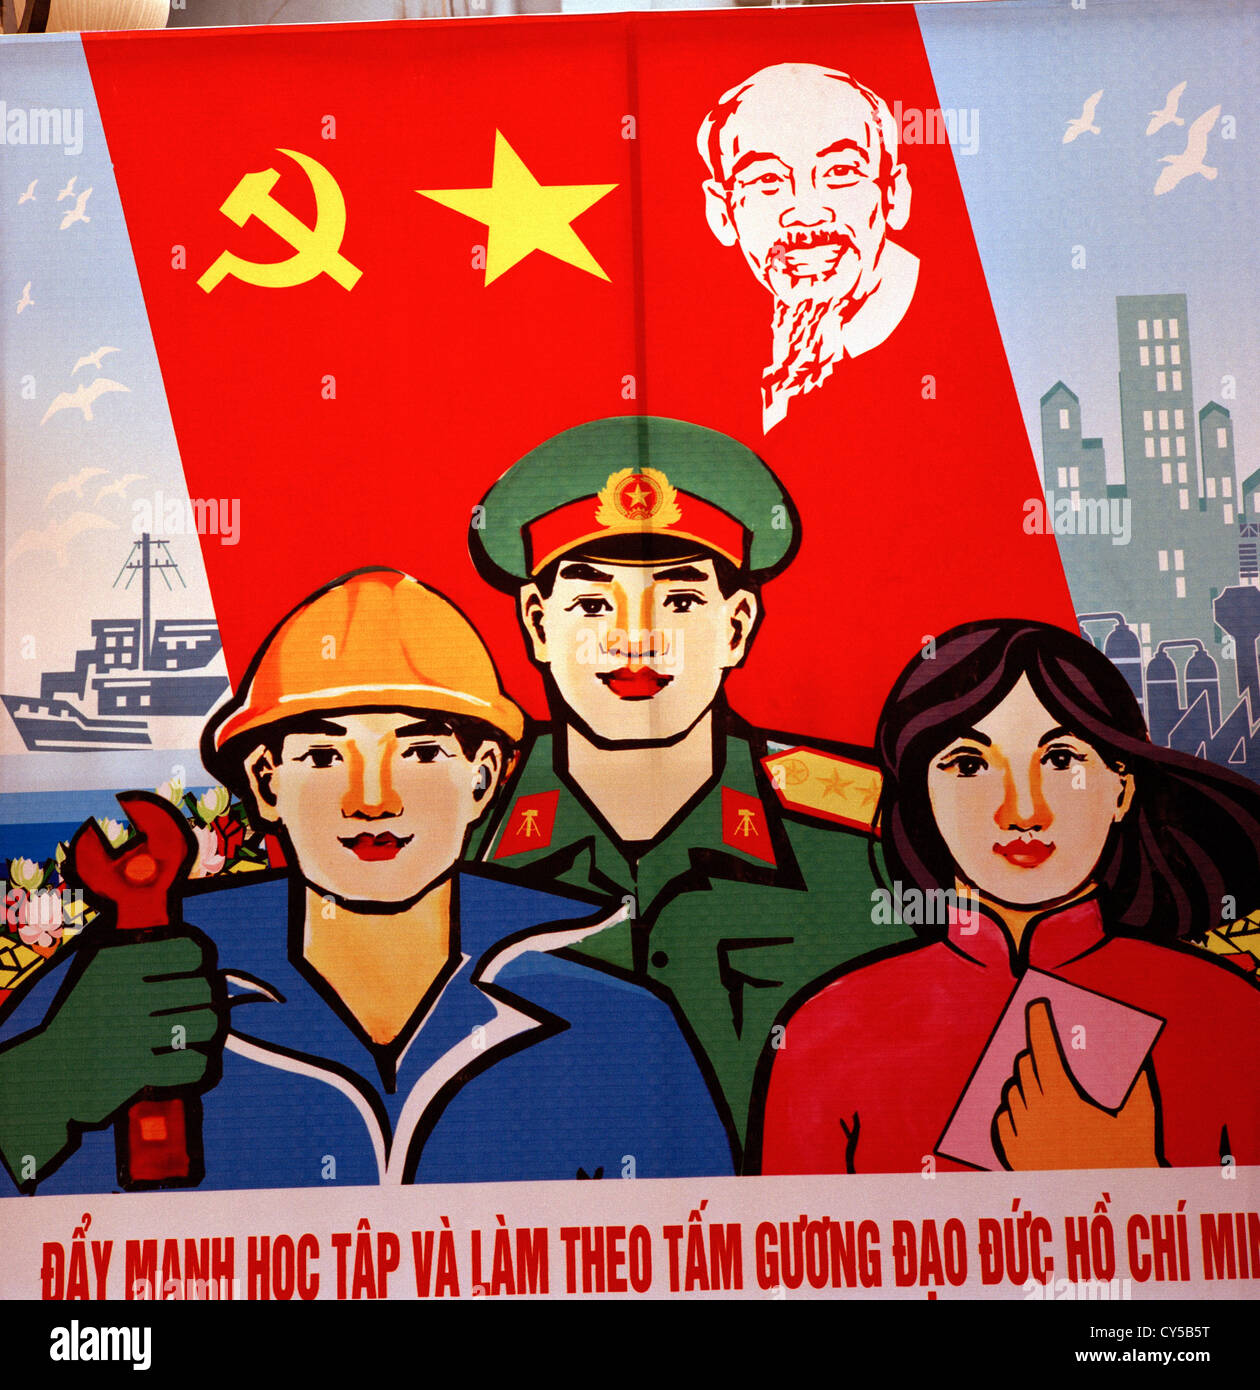 La propagande politique à Hanoi au Vietnam en Extrême-Orient asie du sud-est. politique communisme socialisme socialiste communiste Ho chi minh histoire Banque D'Images